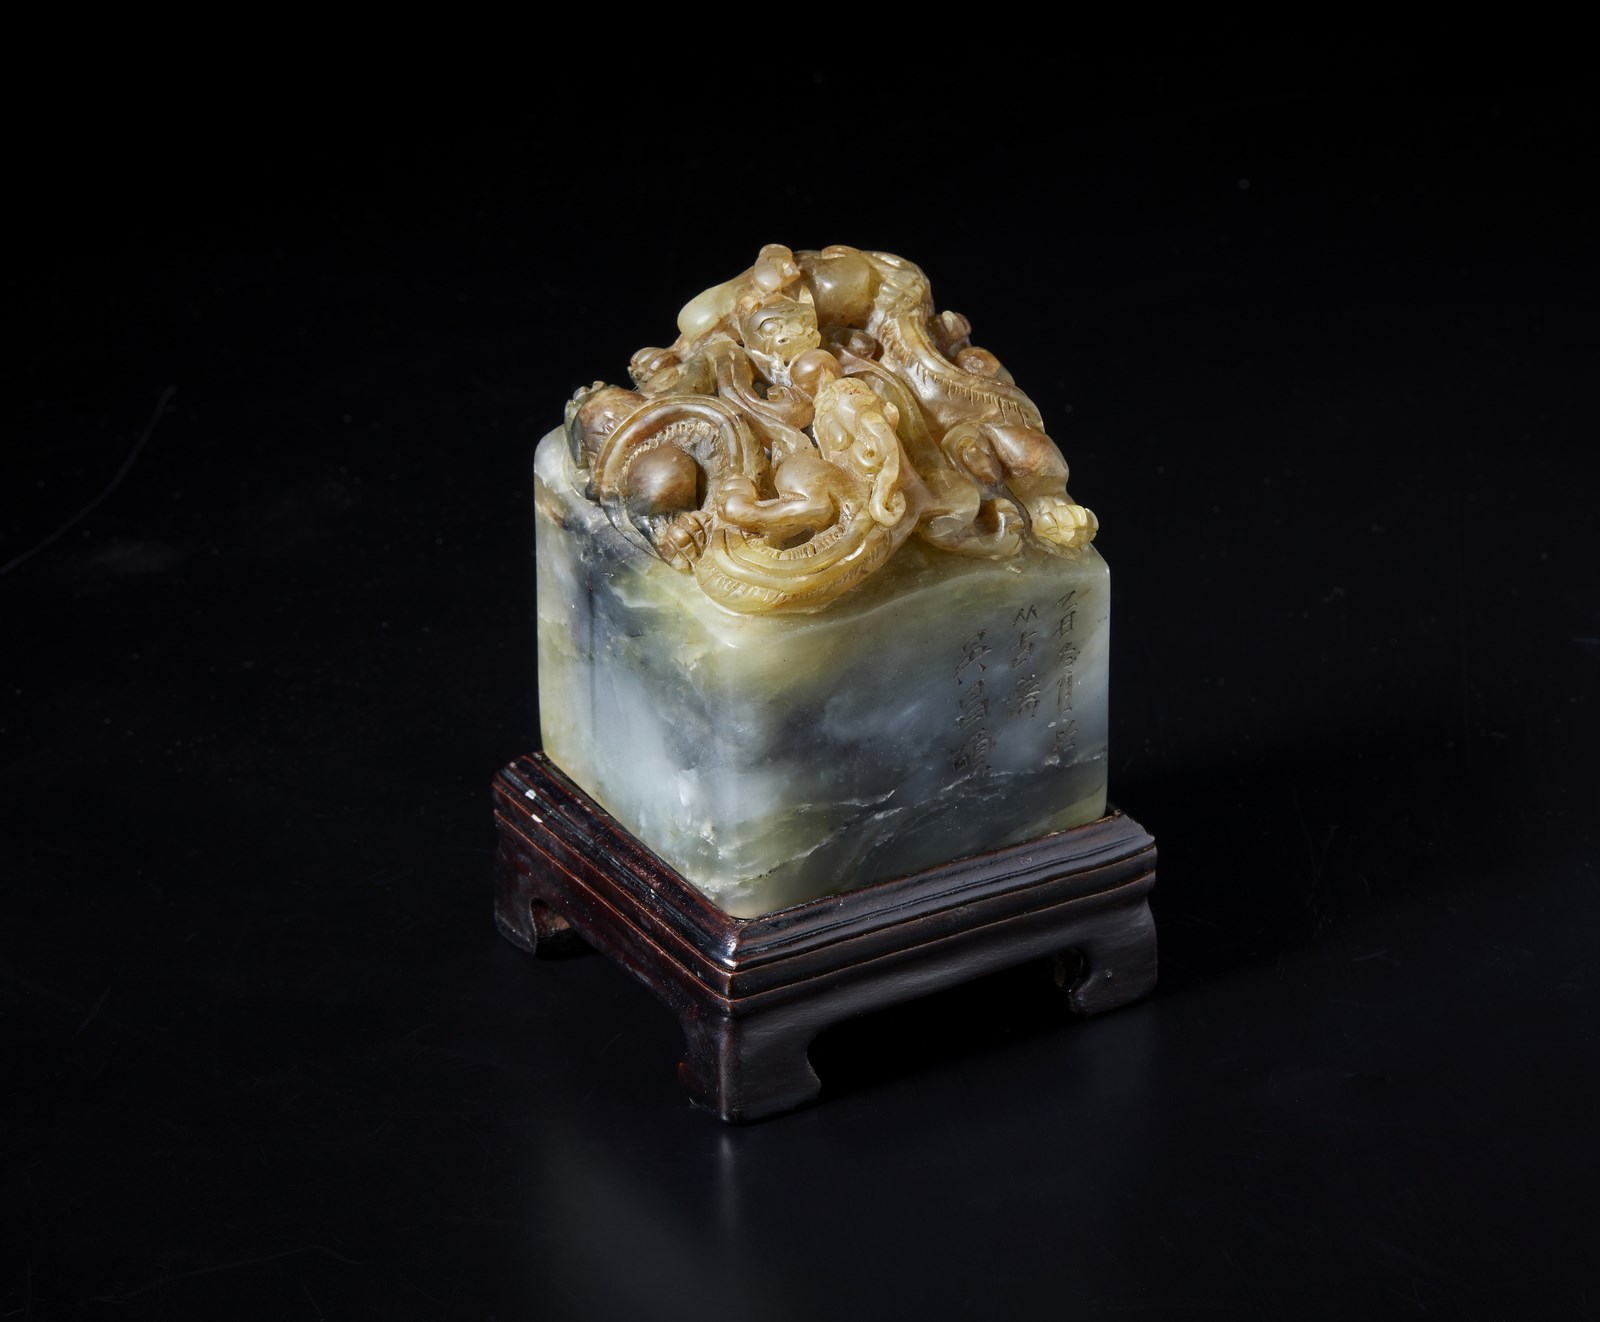 Sigillo in pietra saponaria con base in legno.
Cina, ,inizi XX secolo. (Arte Cinese )